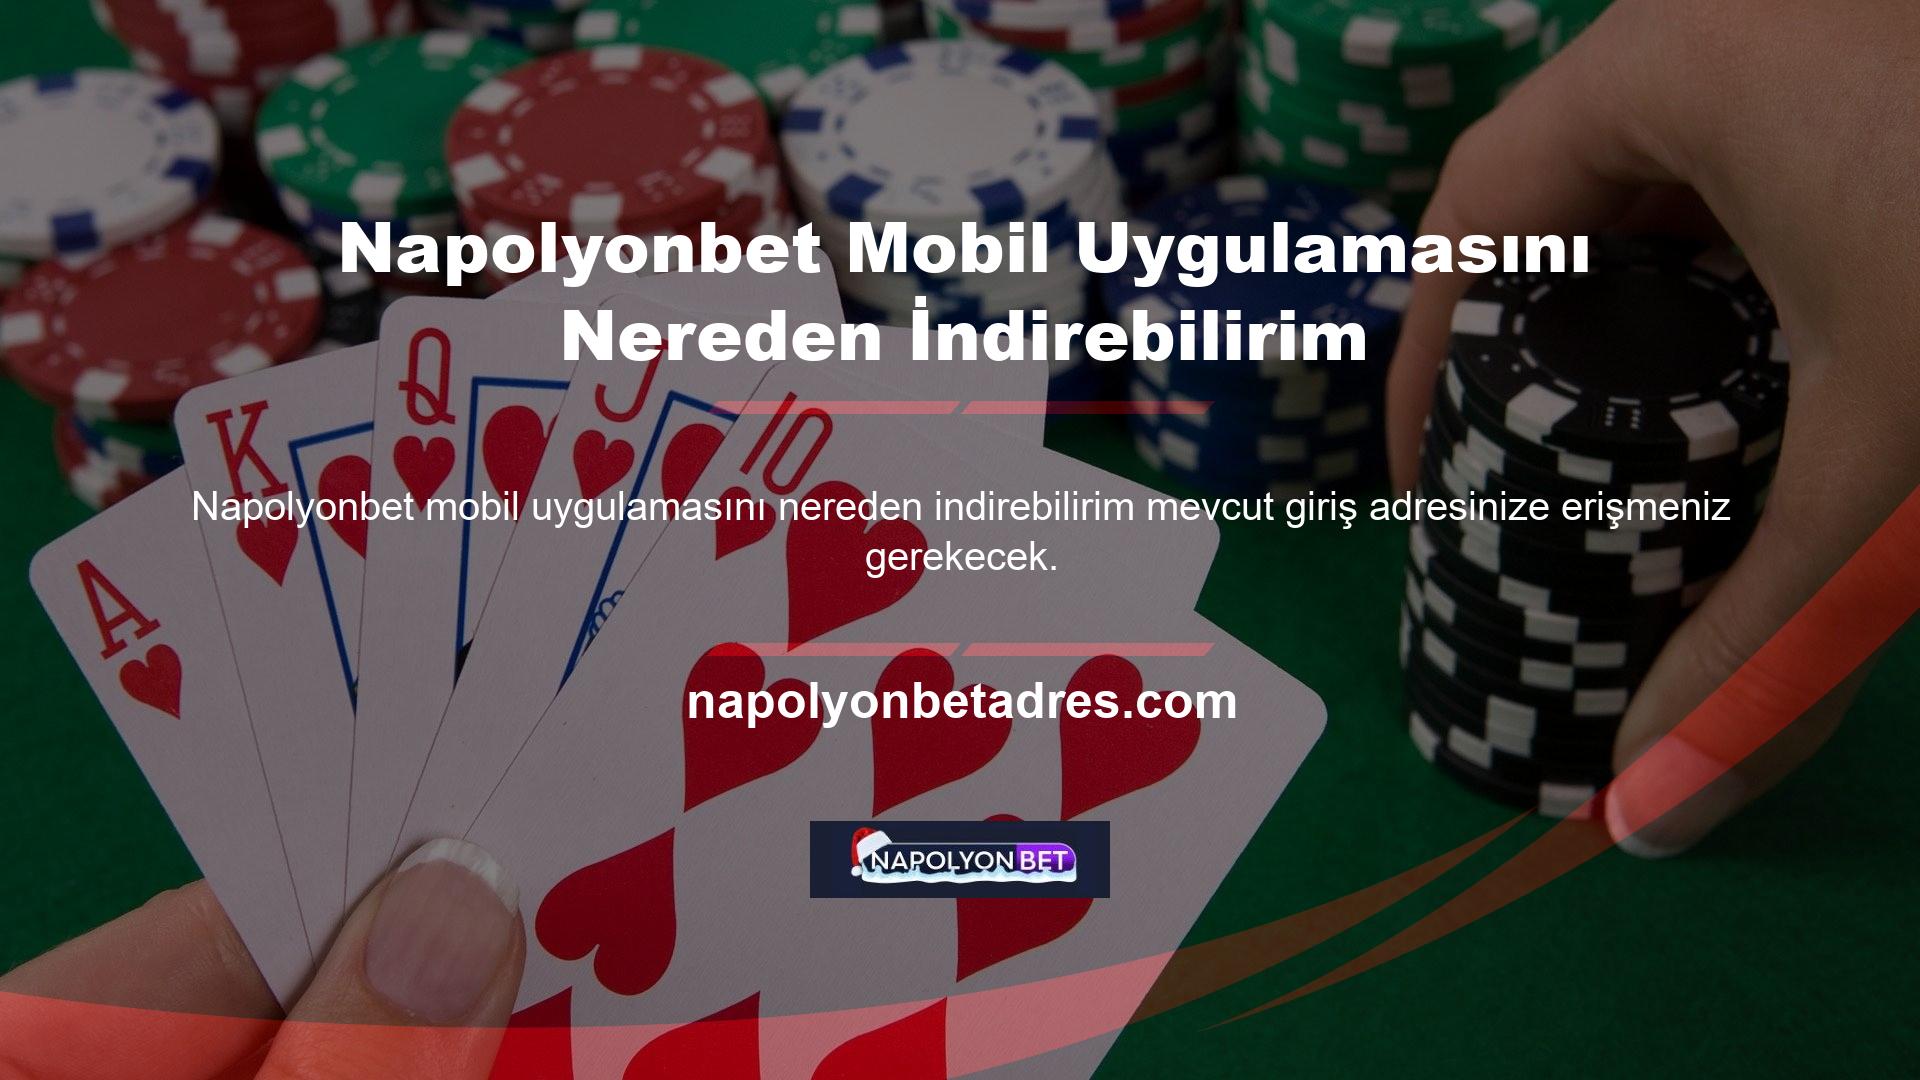 Bilindiği gibi Napolyonbet, Türkiye'de faaliyet gösteren yabancı casino sitelerinin kalıcı olarak yasaklanmaması için giriş adresini sık sık değiştirmekte, haksız casino oynamamak için bölgedeki üyelere anında bildirim göndererek olası muameleleri engellemektedir